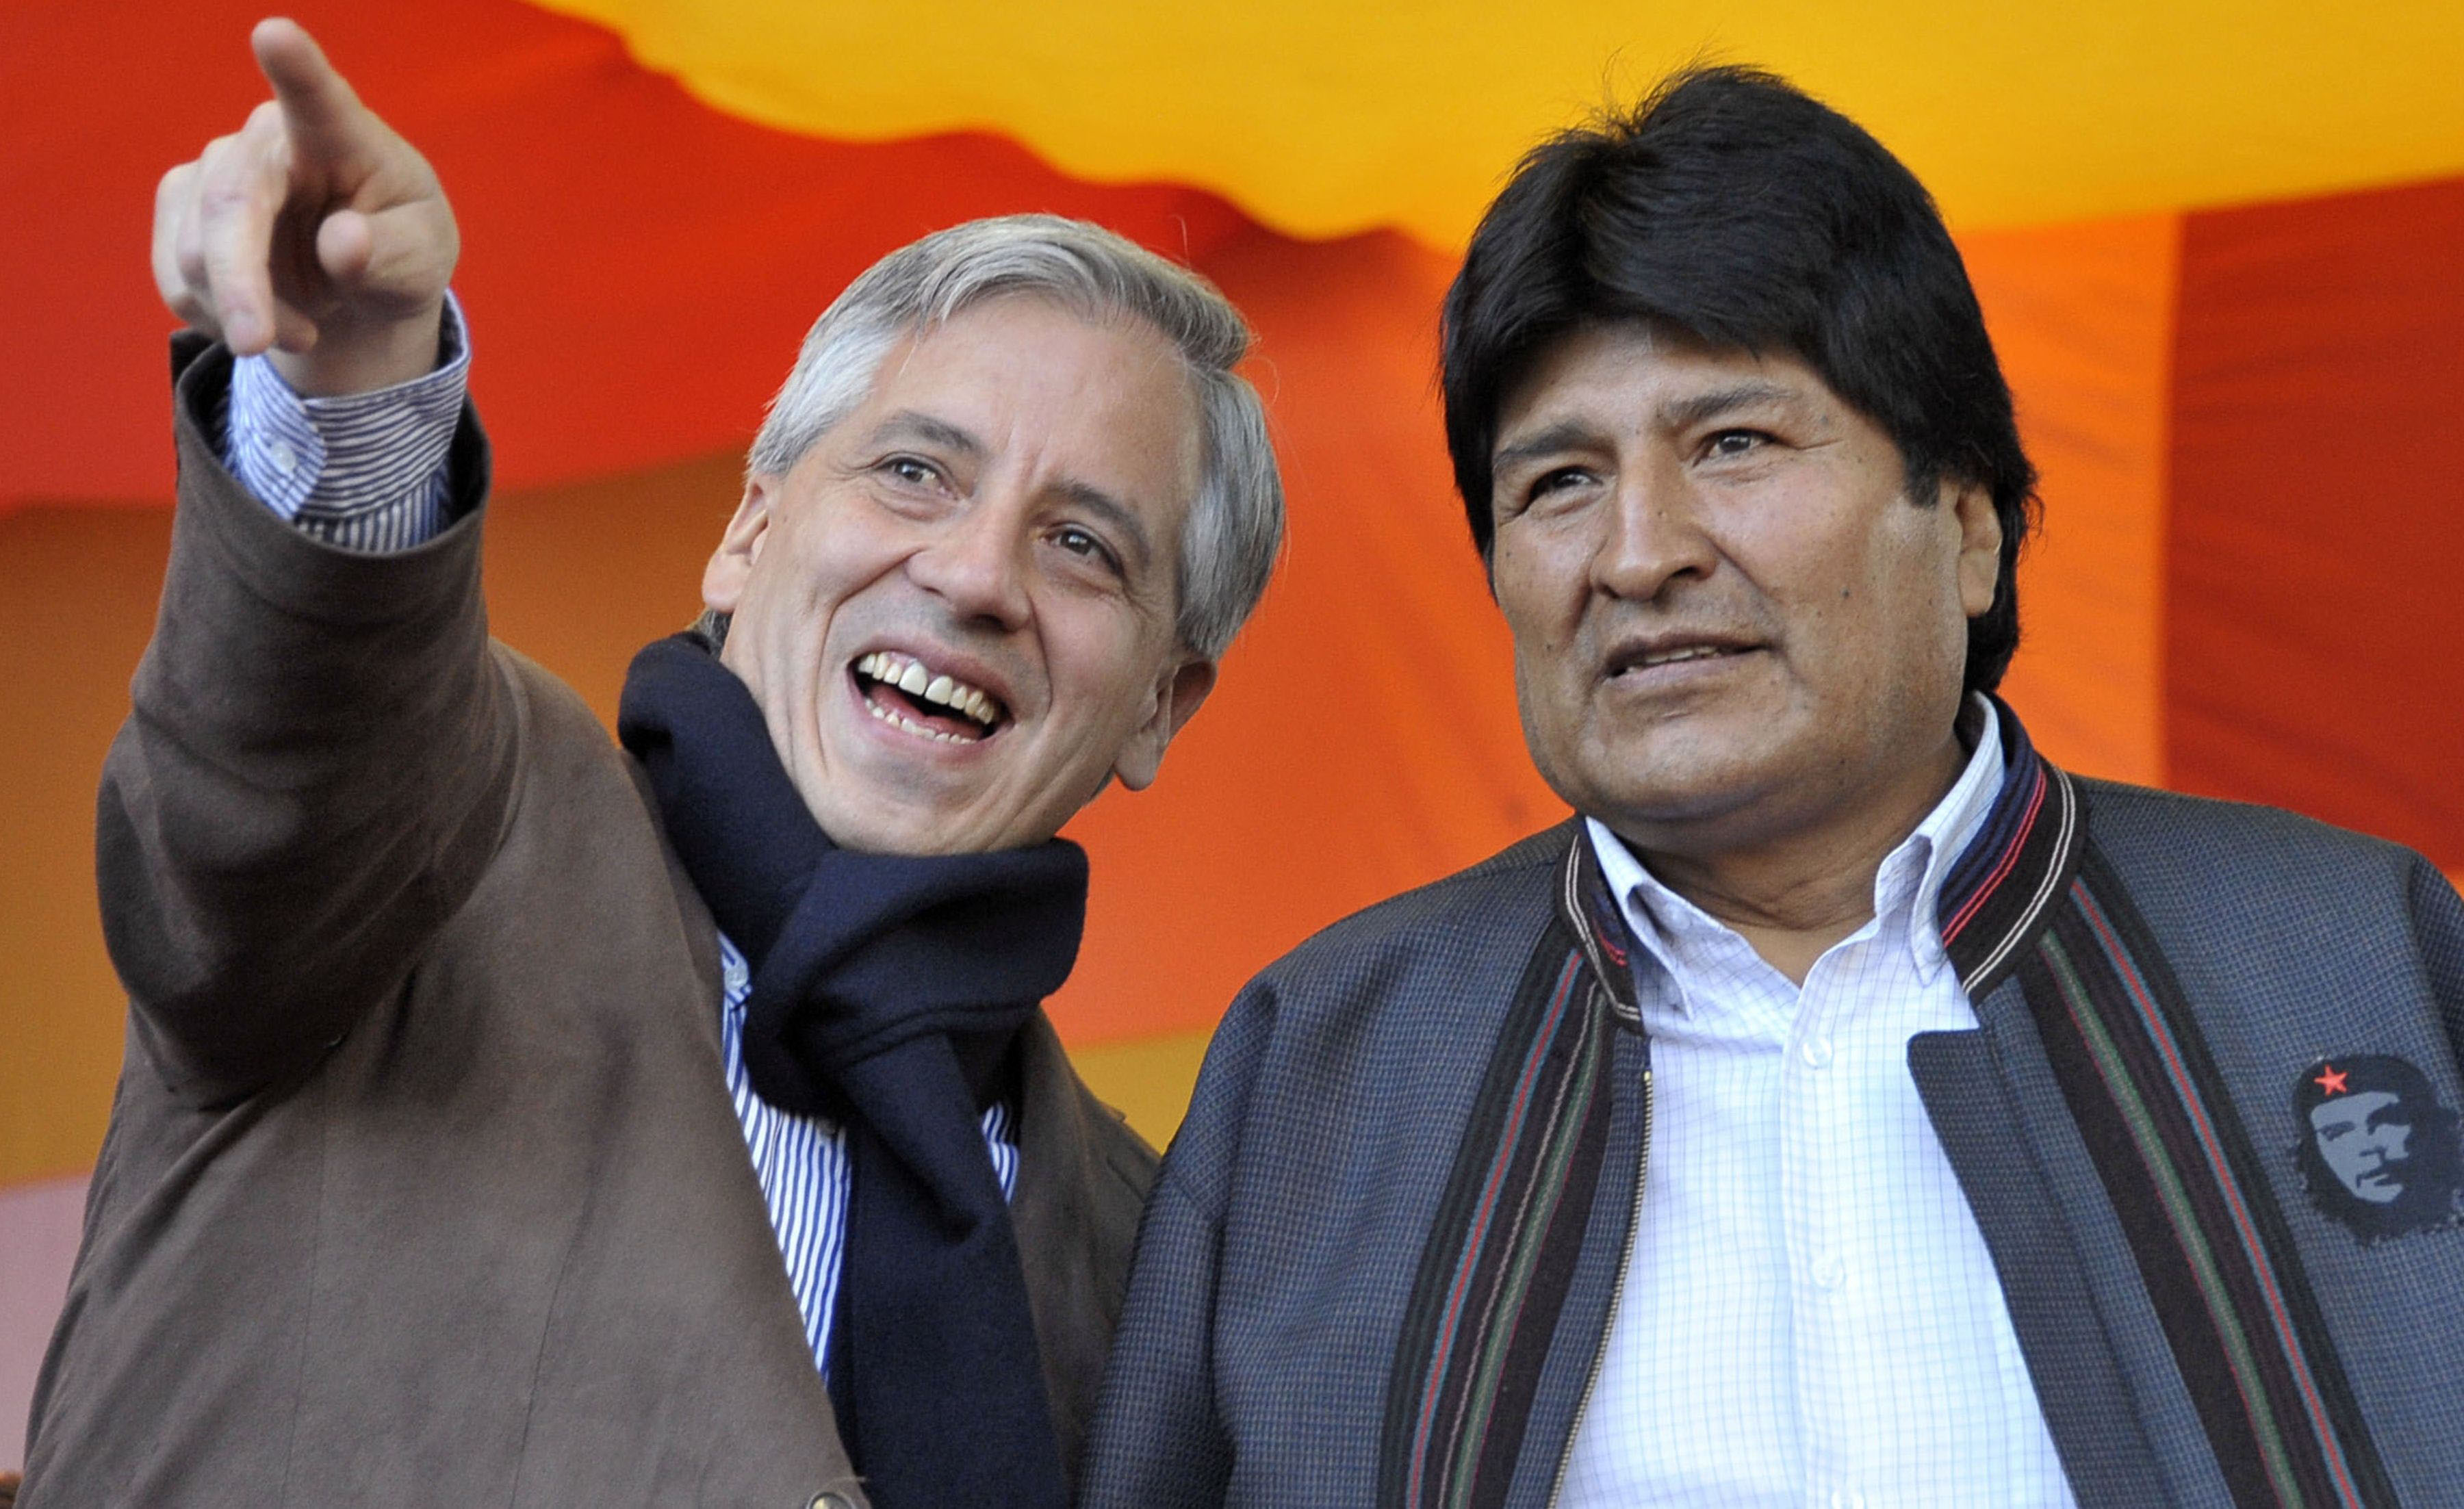 Vicepresidente de Bolivia dice que veto a su participación en aniversario de revista chilena es un “error político”